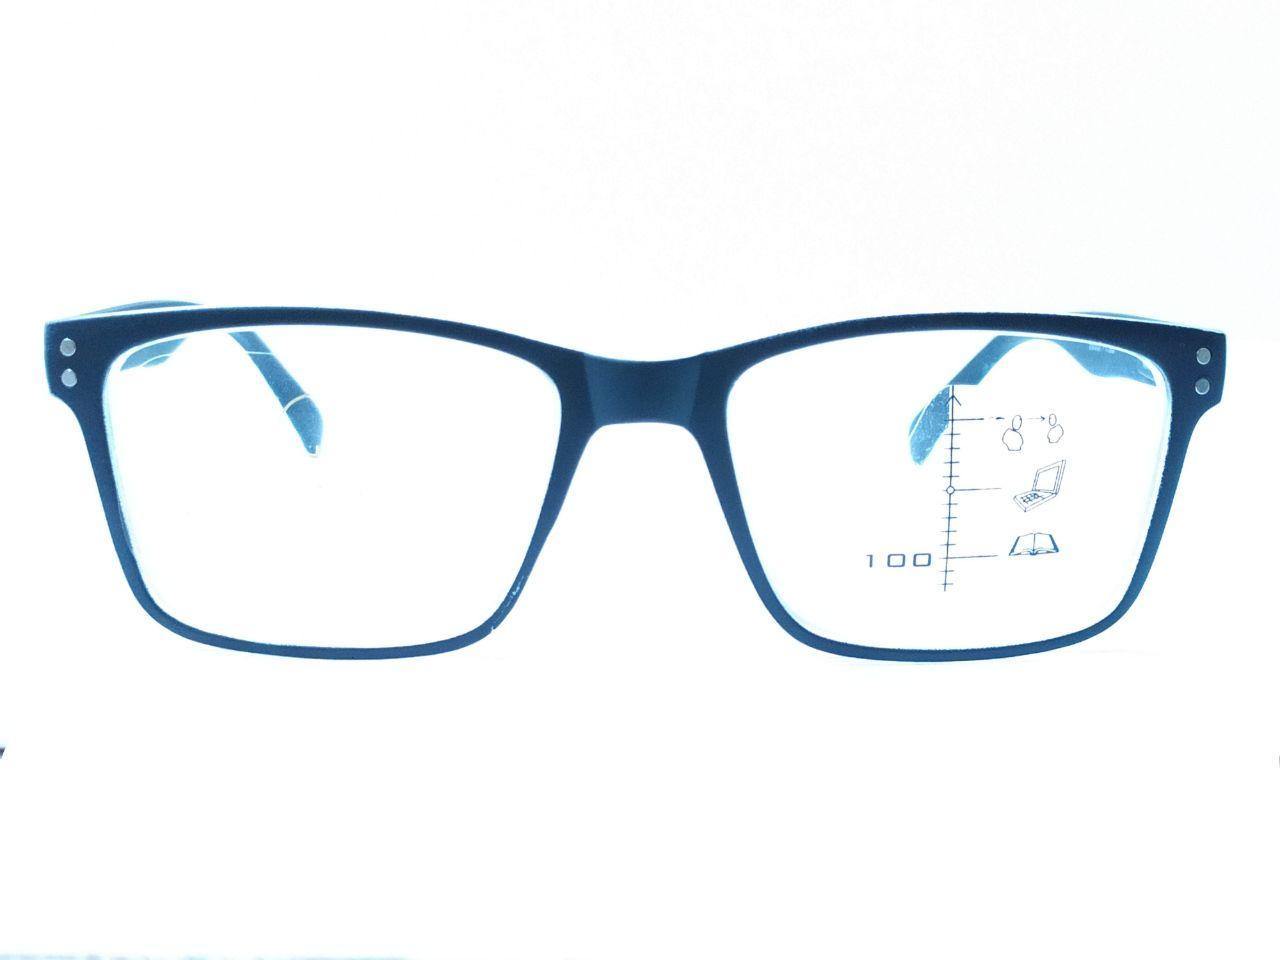 Blue Light Block Progressive Multifocal Computer Reading Glasses for Men Women - Glasses India Online